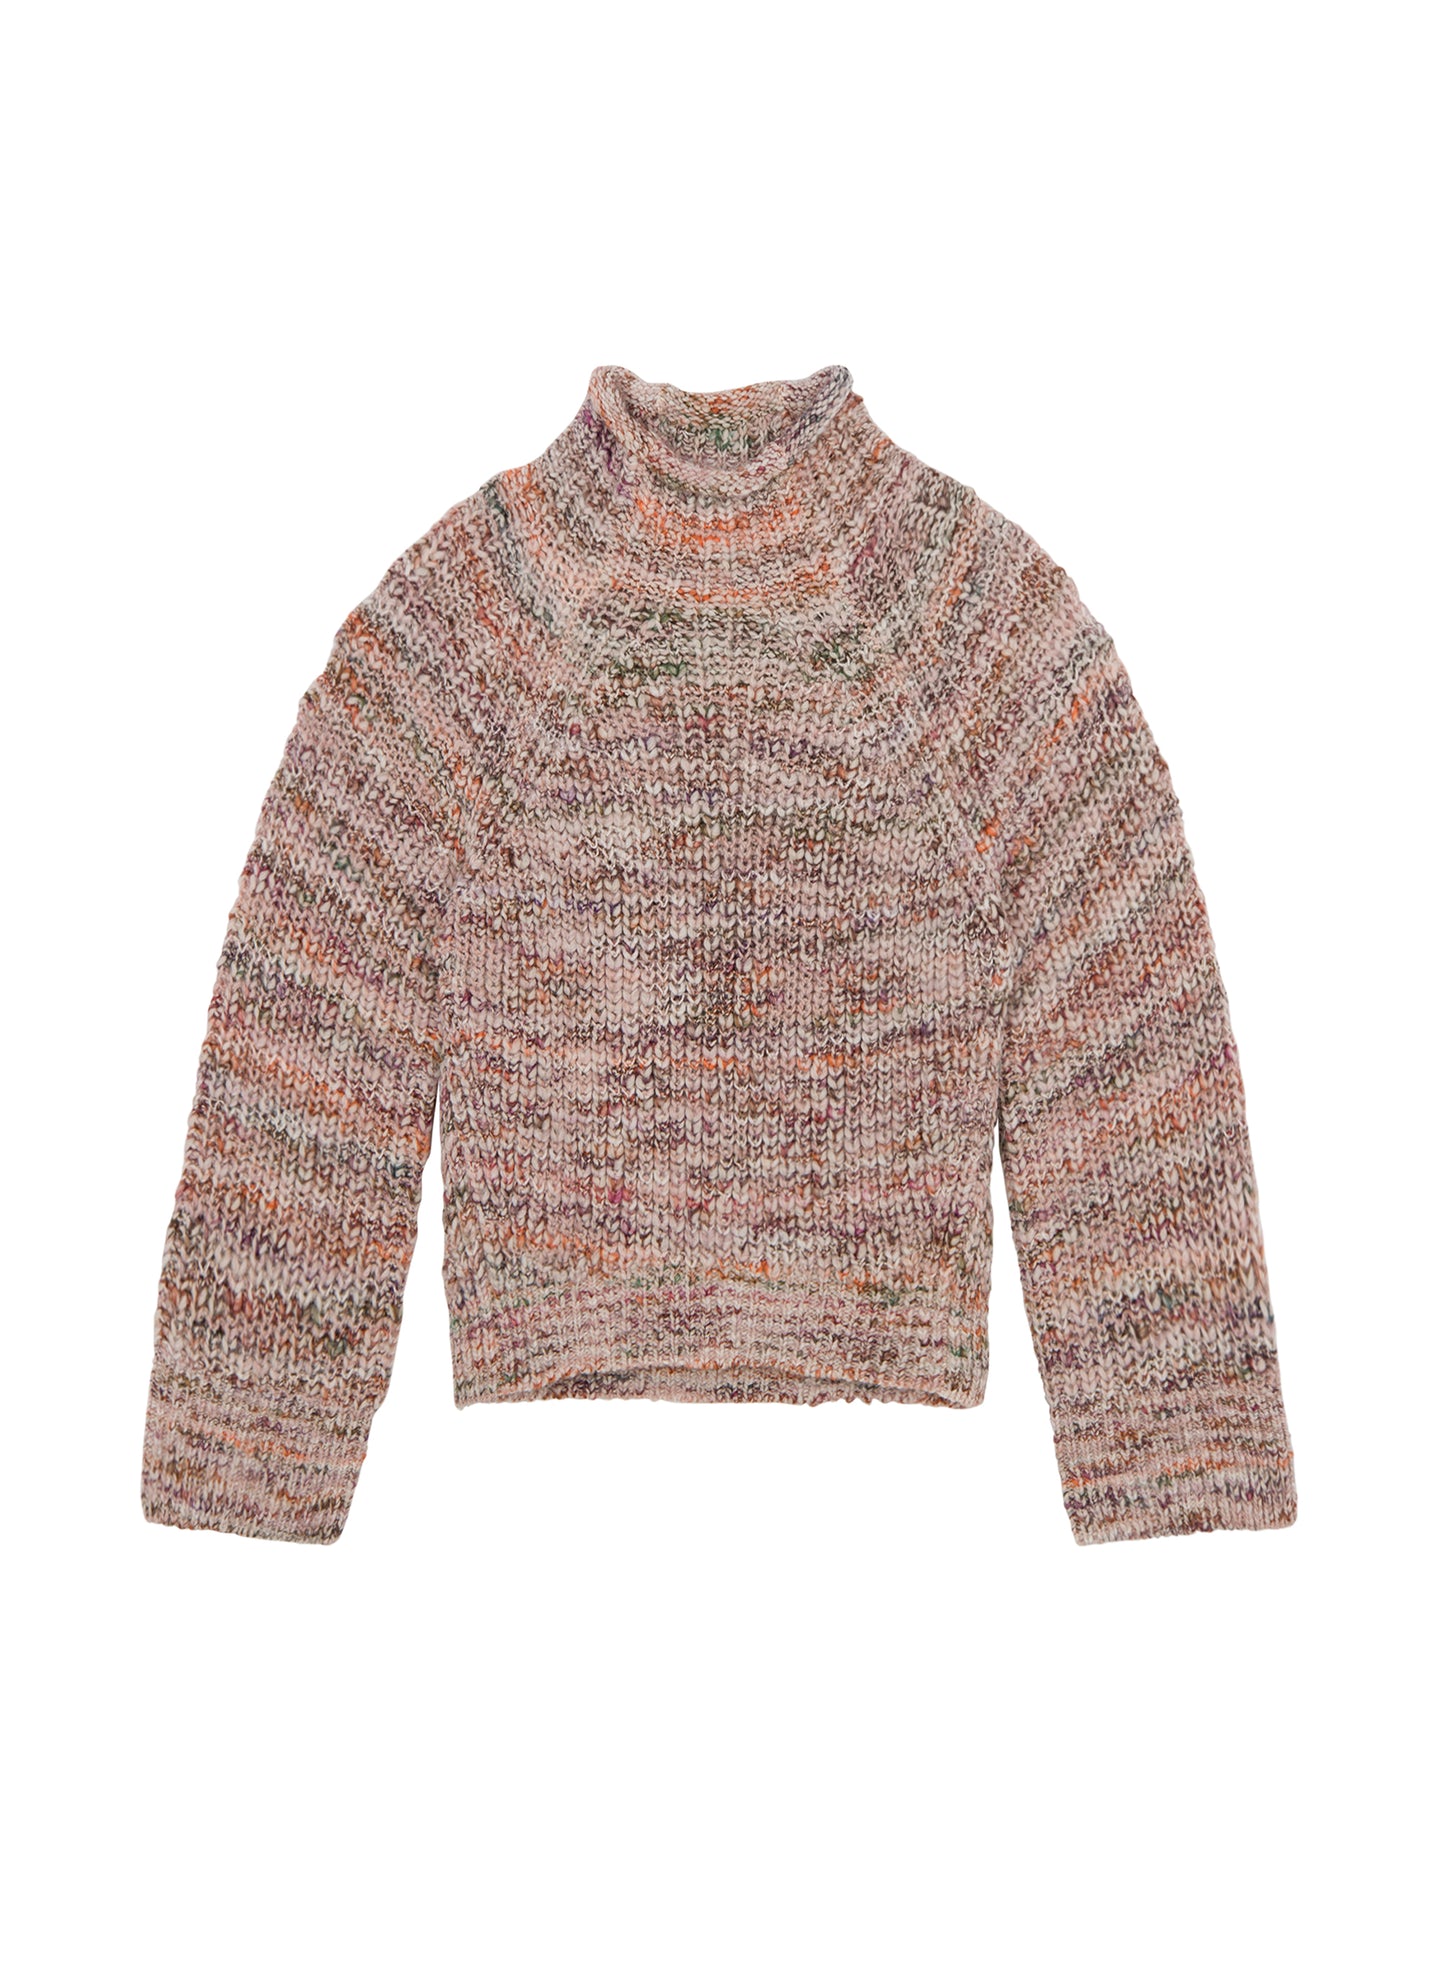 Liv Marled Wool Sweater